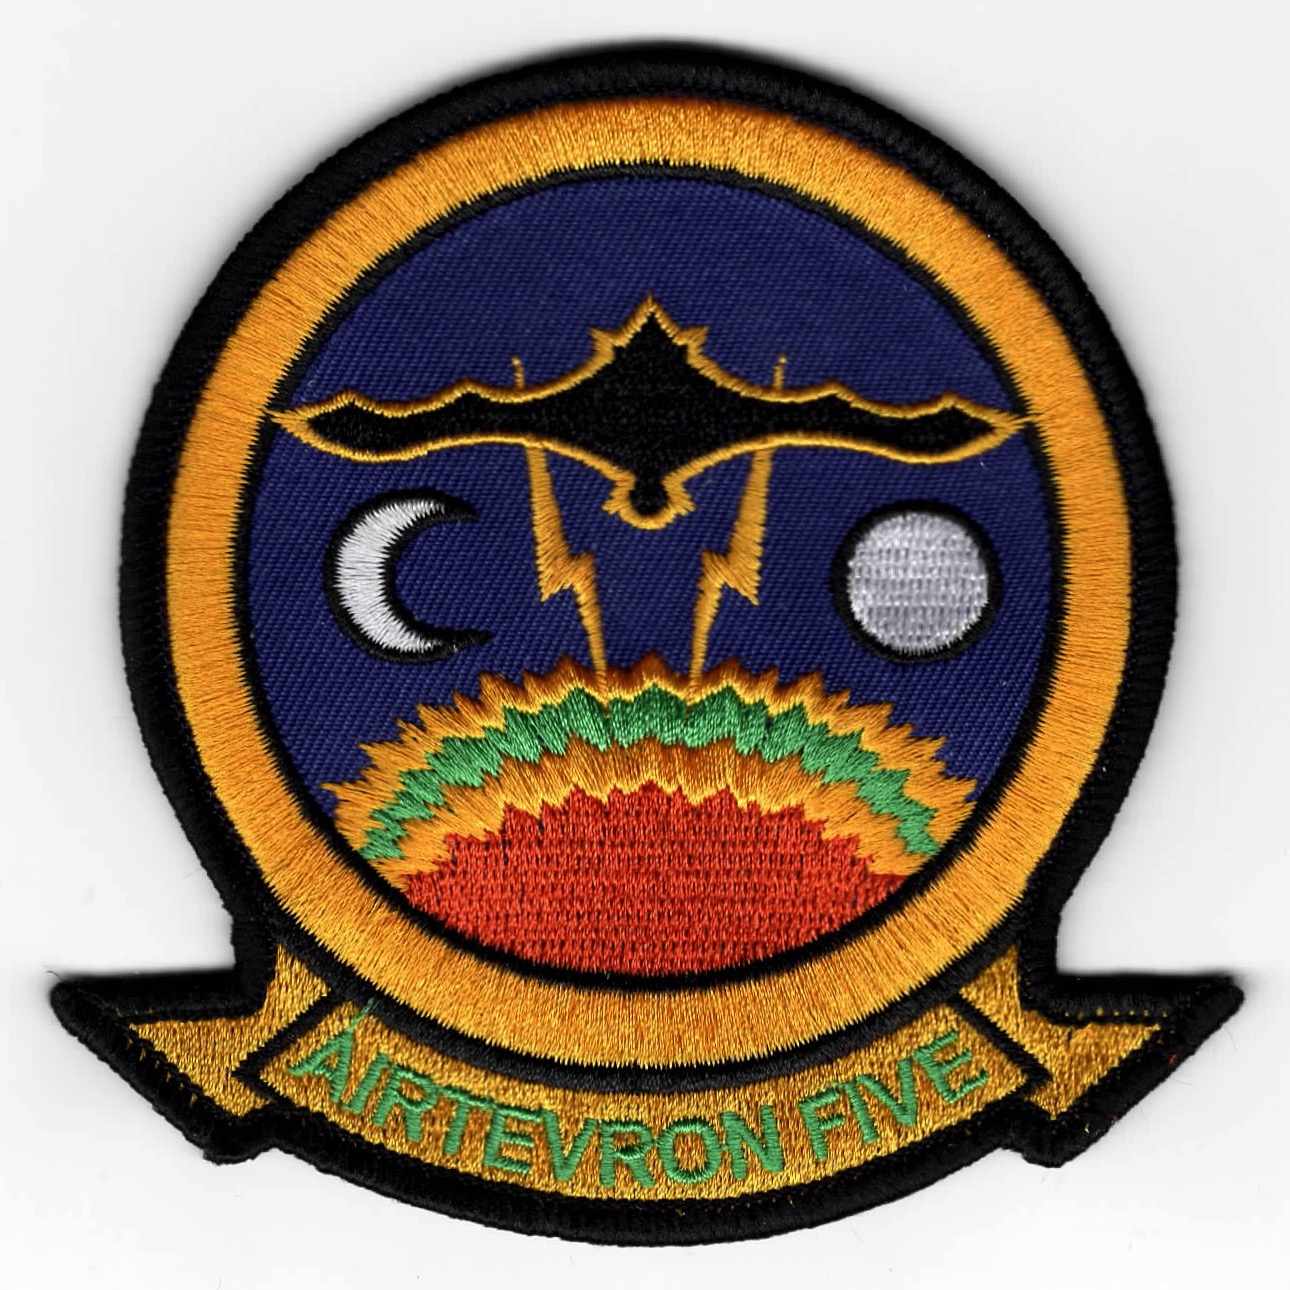 AIRTEVRON FIVE (VX-5) Squadron Patch